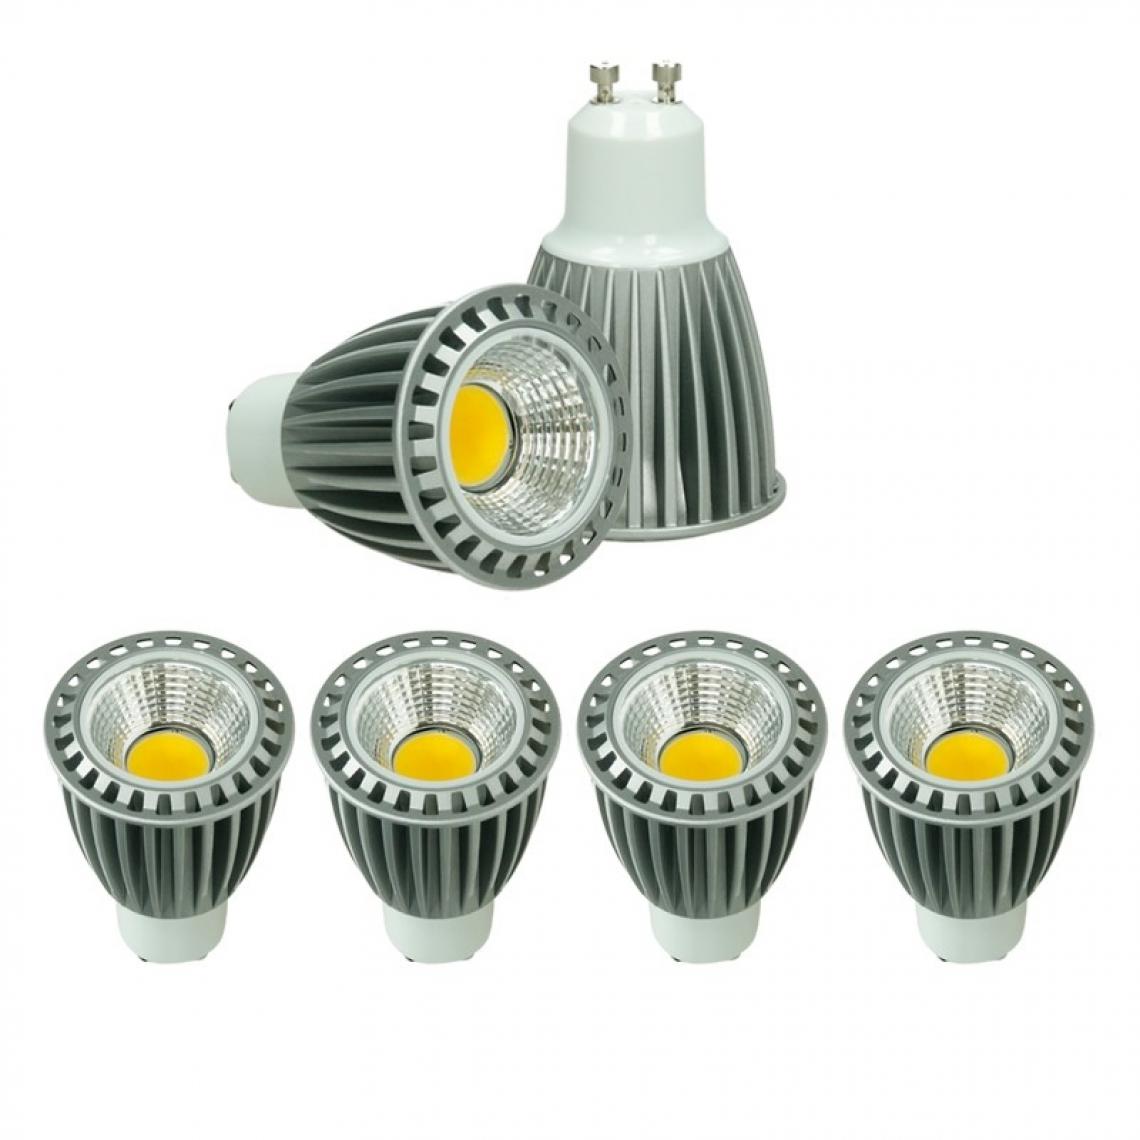 Ecd Germany - ECD Germany 4 x GU10 COB spot 9W Haute puissance Lampe à économie d'énergie d'environ 552 lumens remplace 60W Lampe halogène 60° - Angle de Faisceau Blanc Chaud 2800K - Ampoules LED